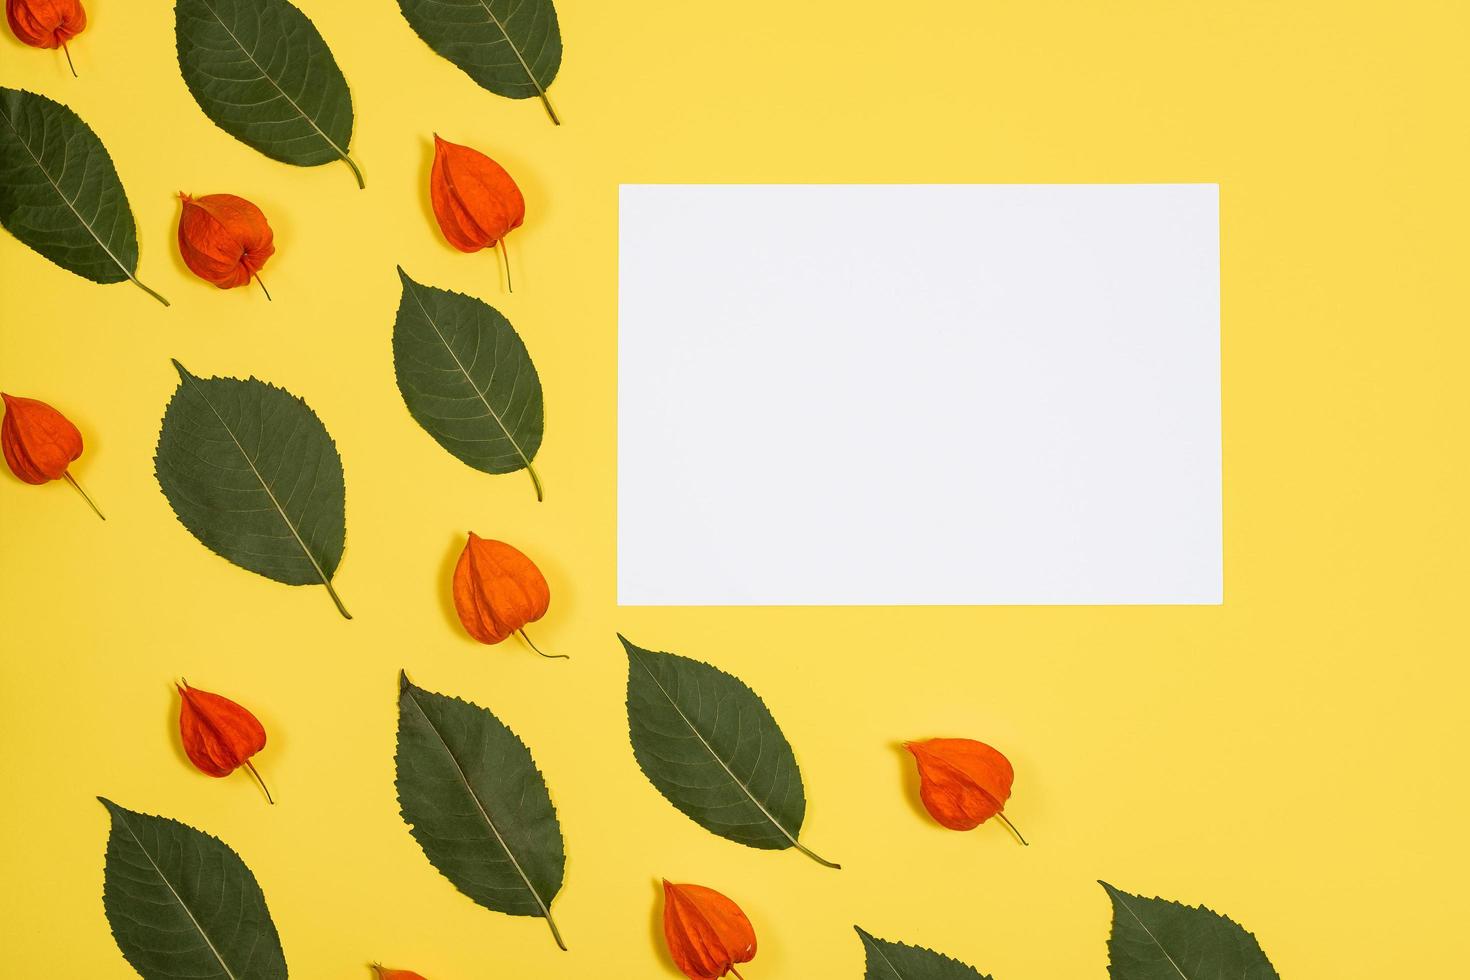 sábana blanca se encuentran sobre un fondo amarillo con un patrón de hojas verdes y physalis foto